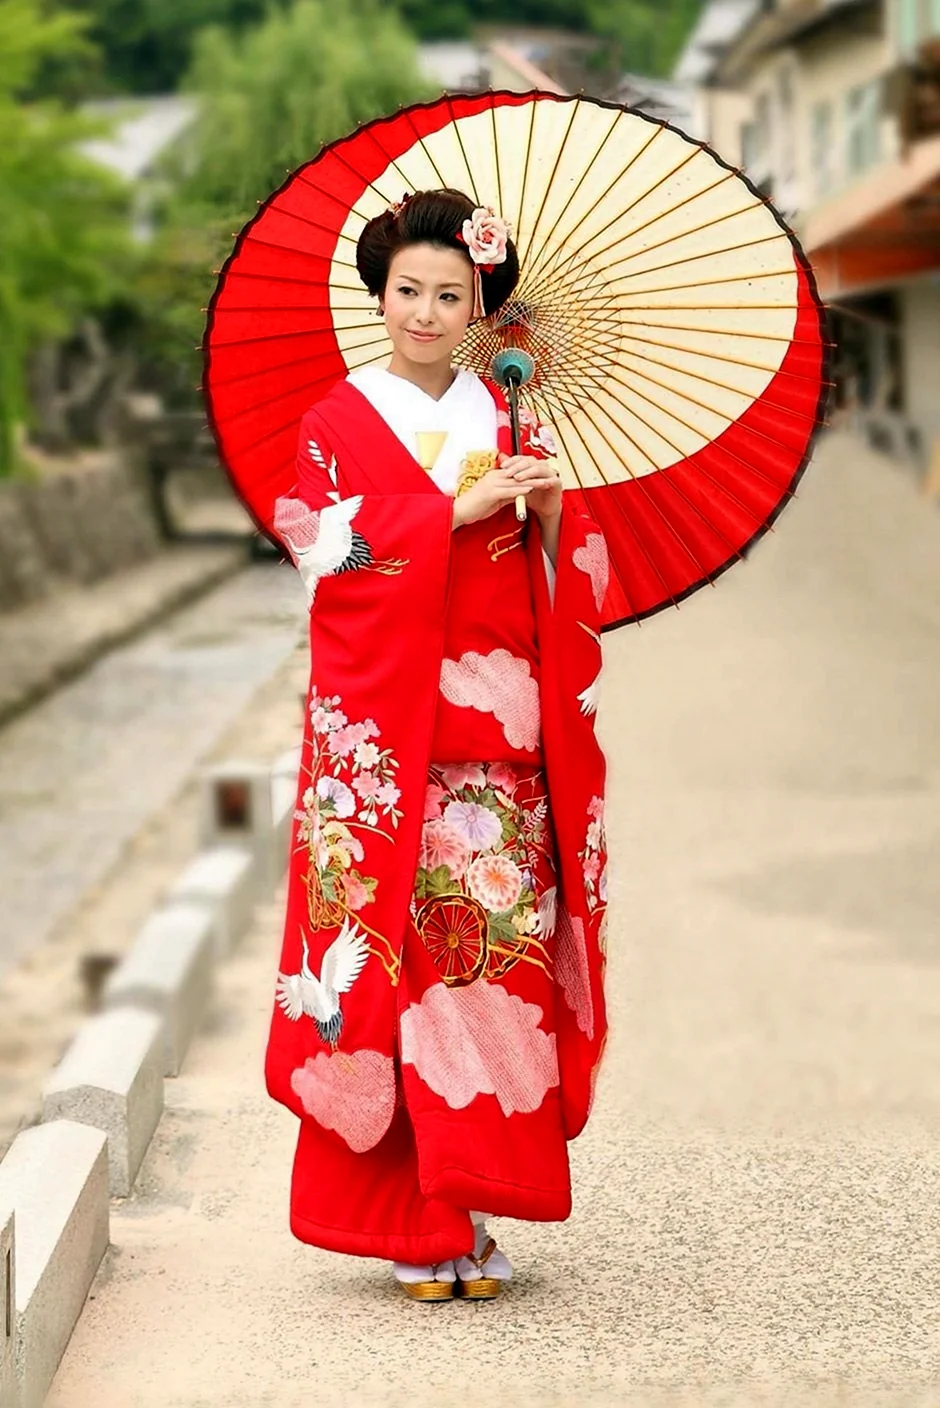 Япония гейши кимоно юката